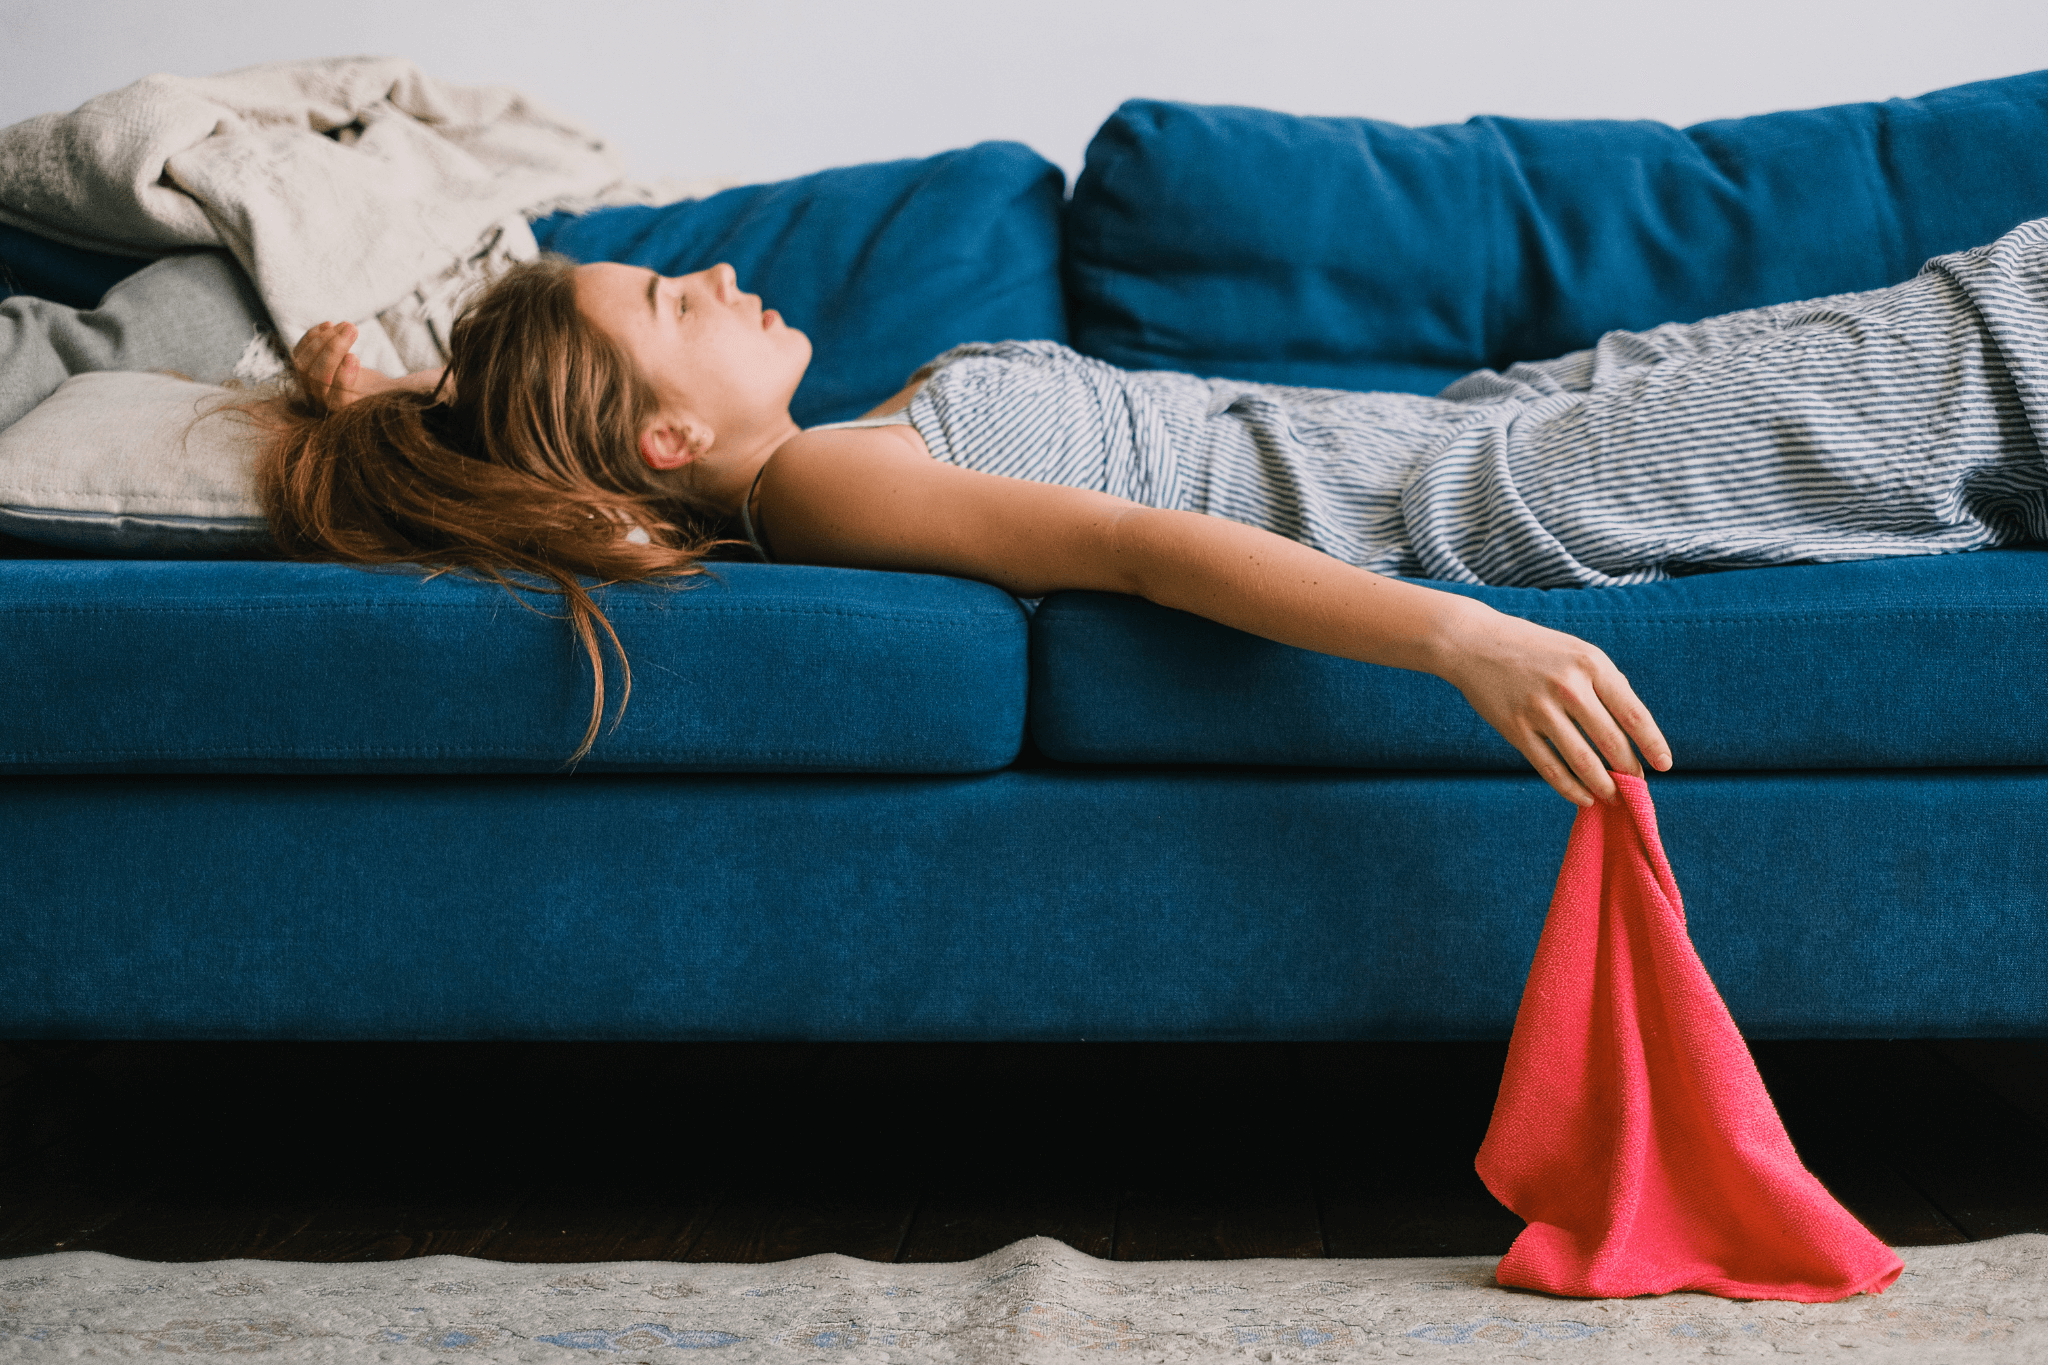 Erschöpft wirkende junge Frau liegt tagsüber in Alltagskleidung auf einem Sofa